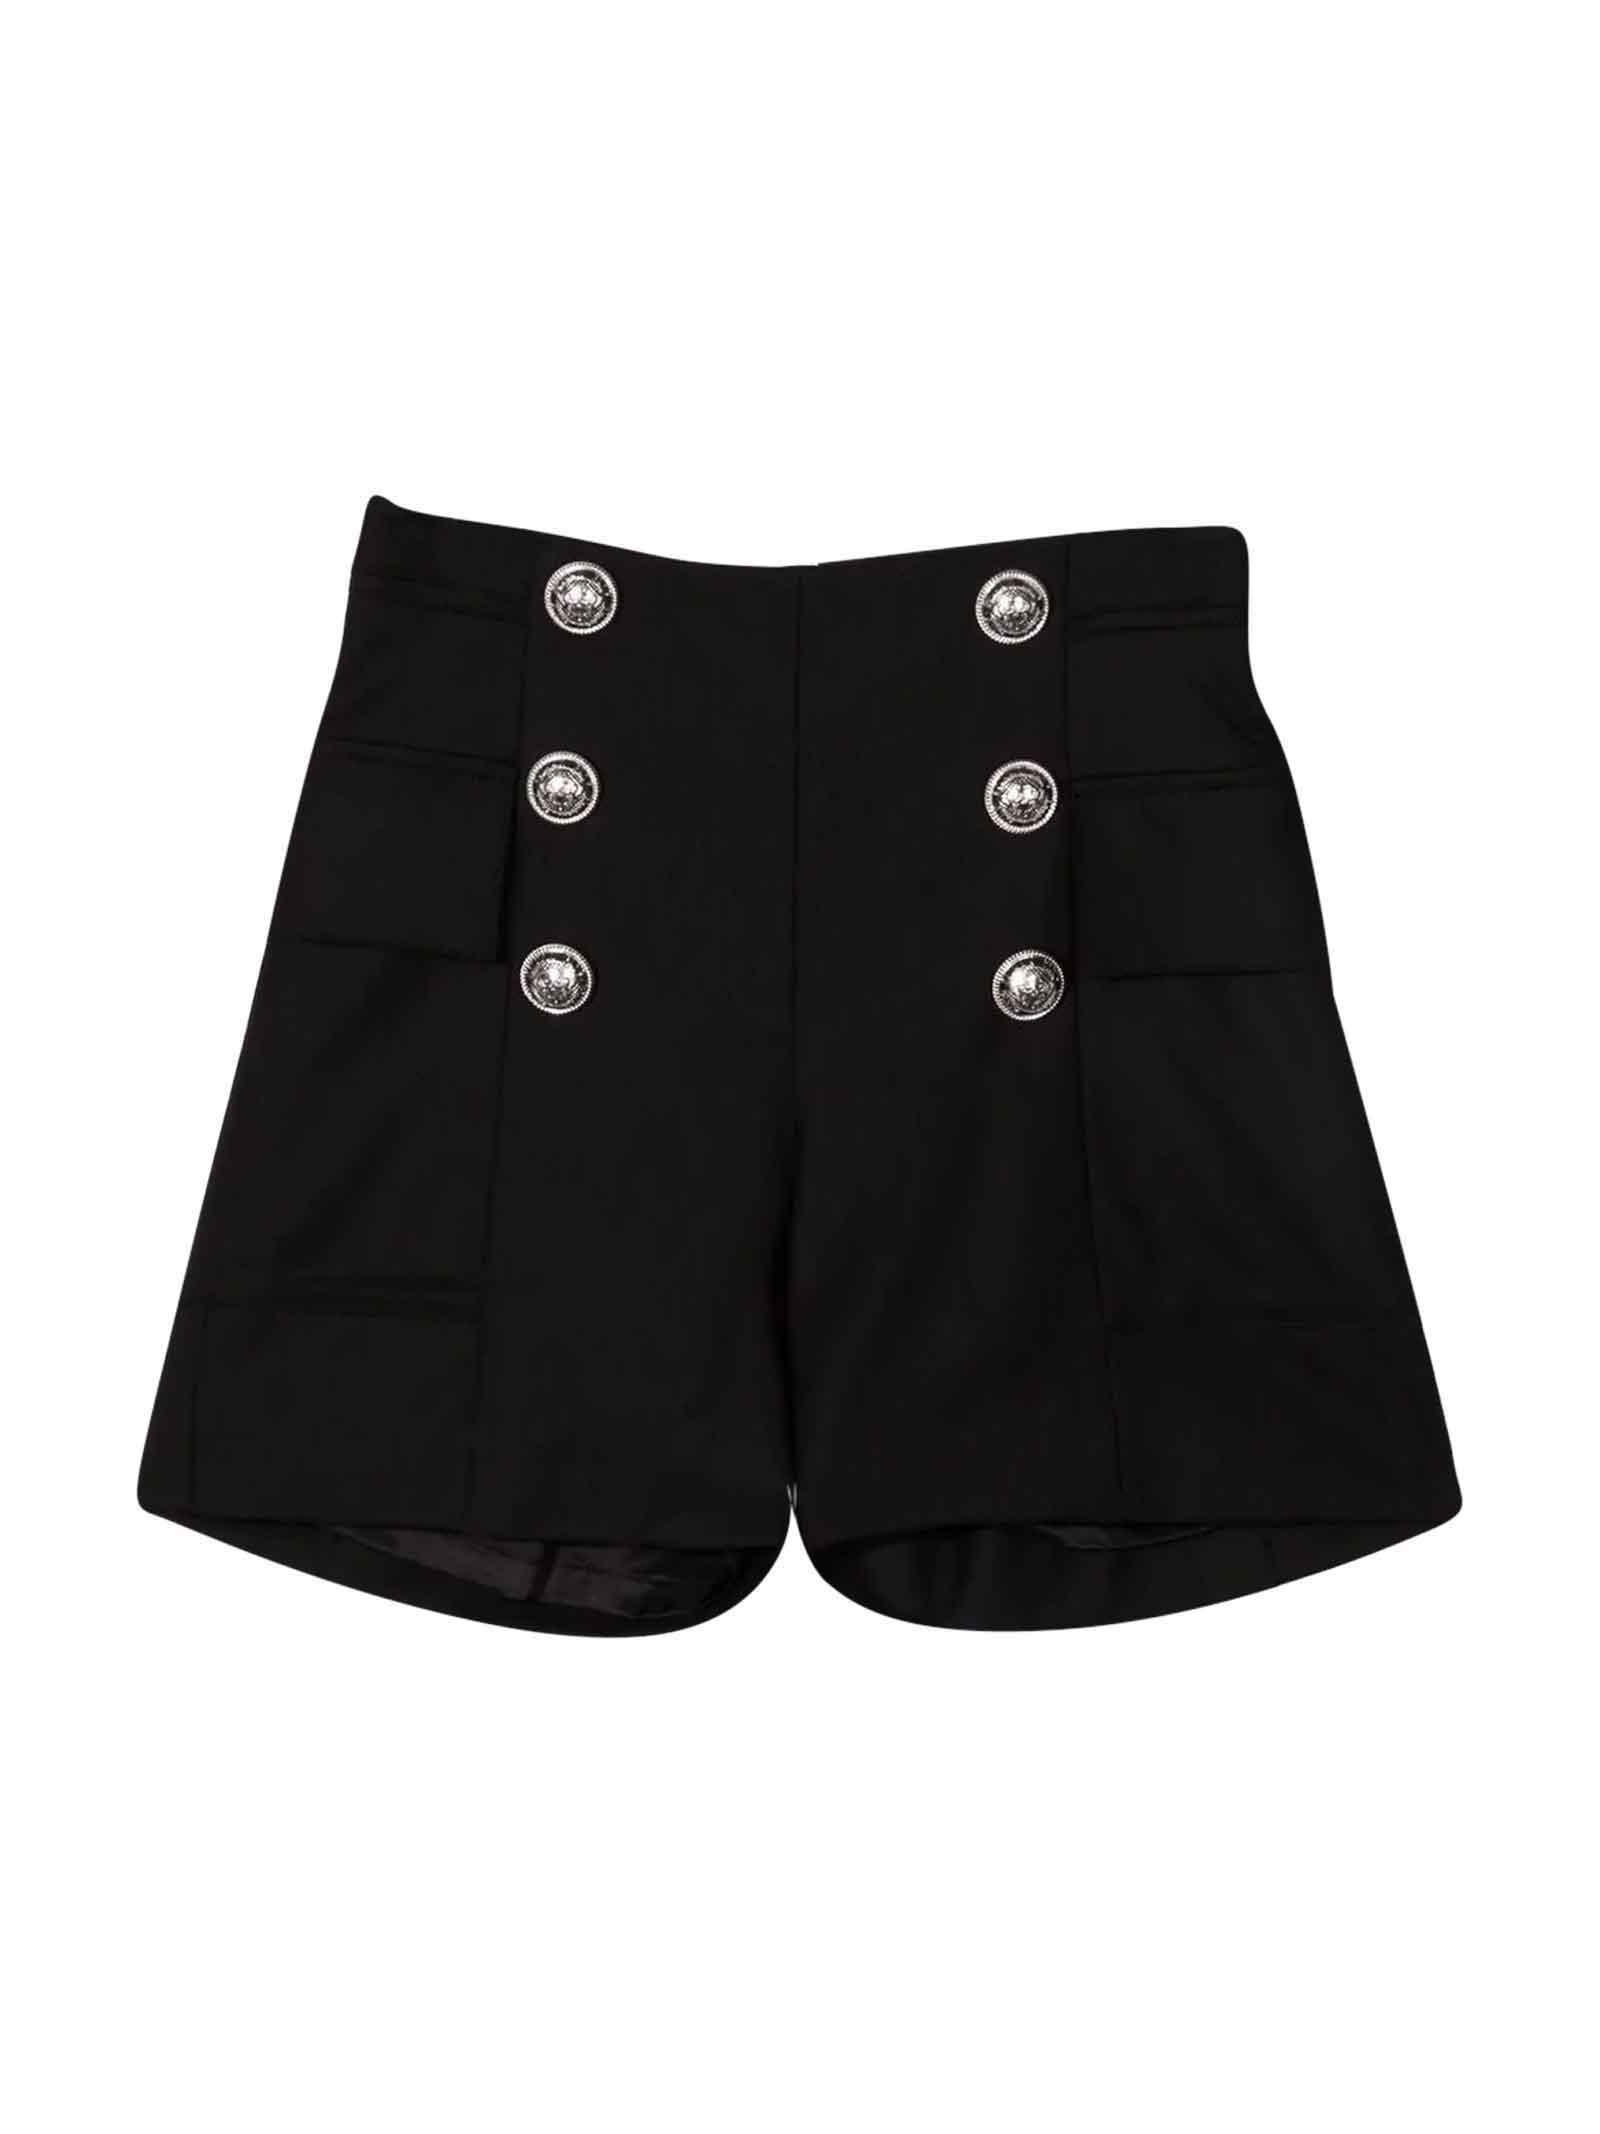 Balmain Black Bermuda Shorts With Silver Buttons